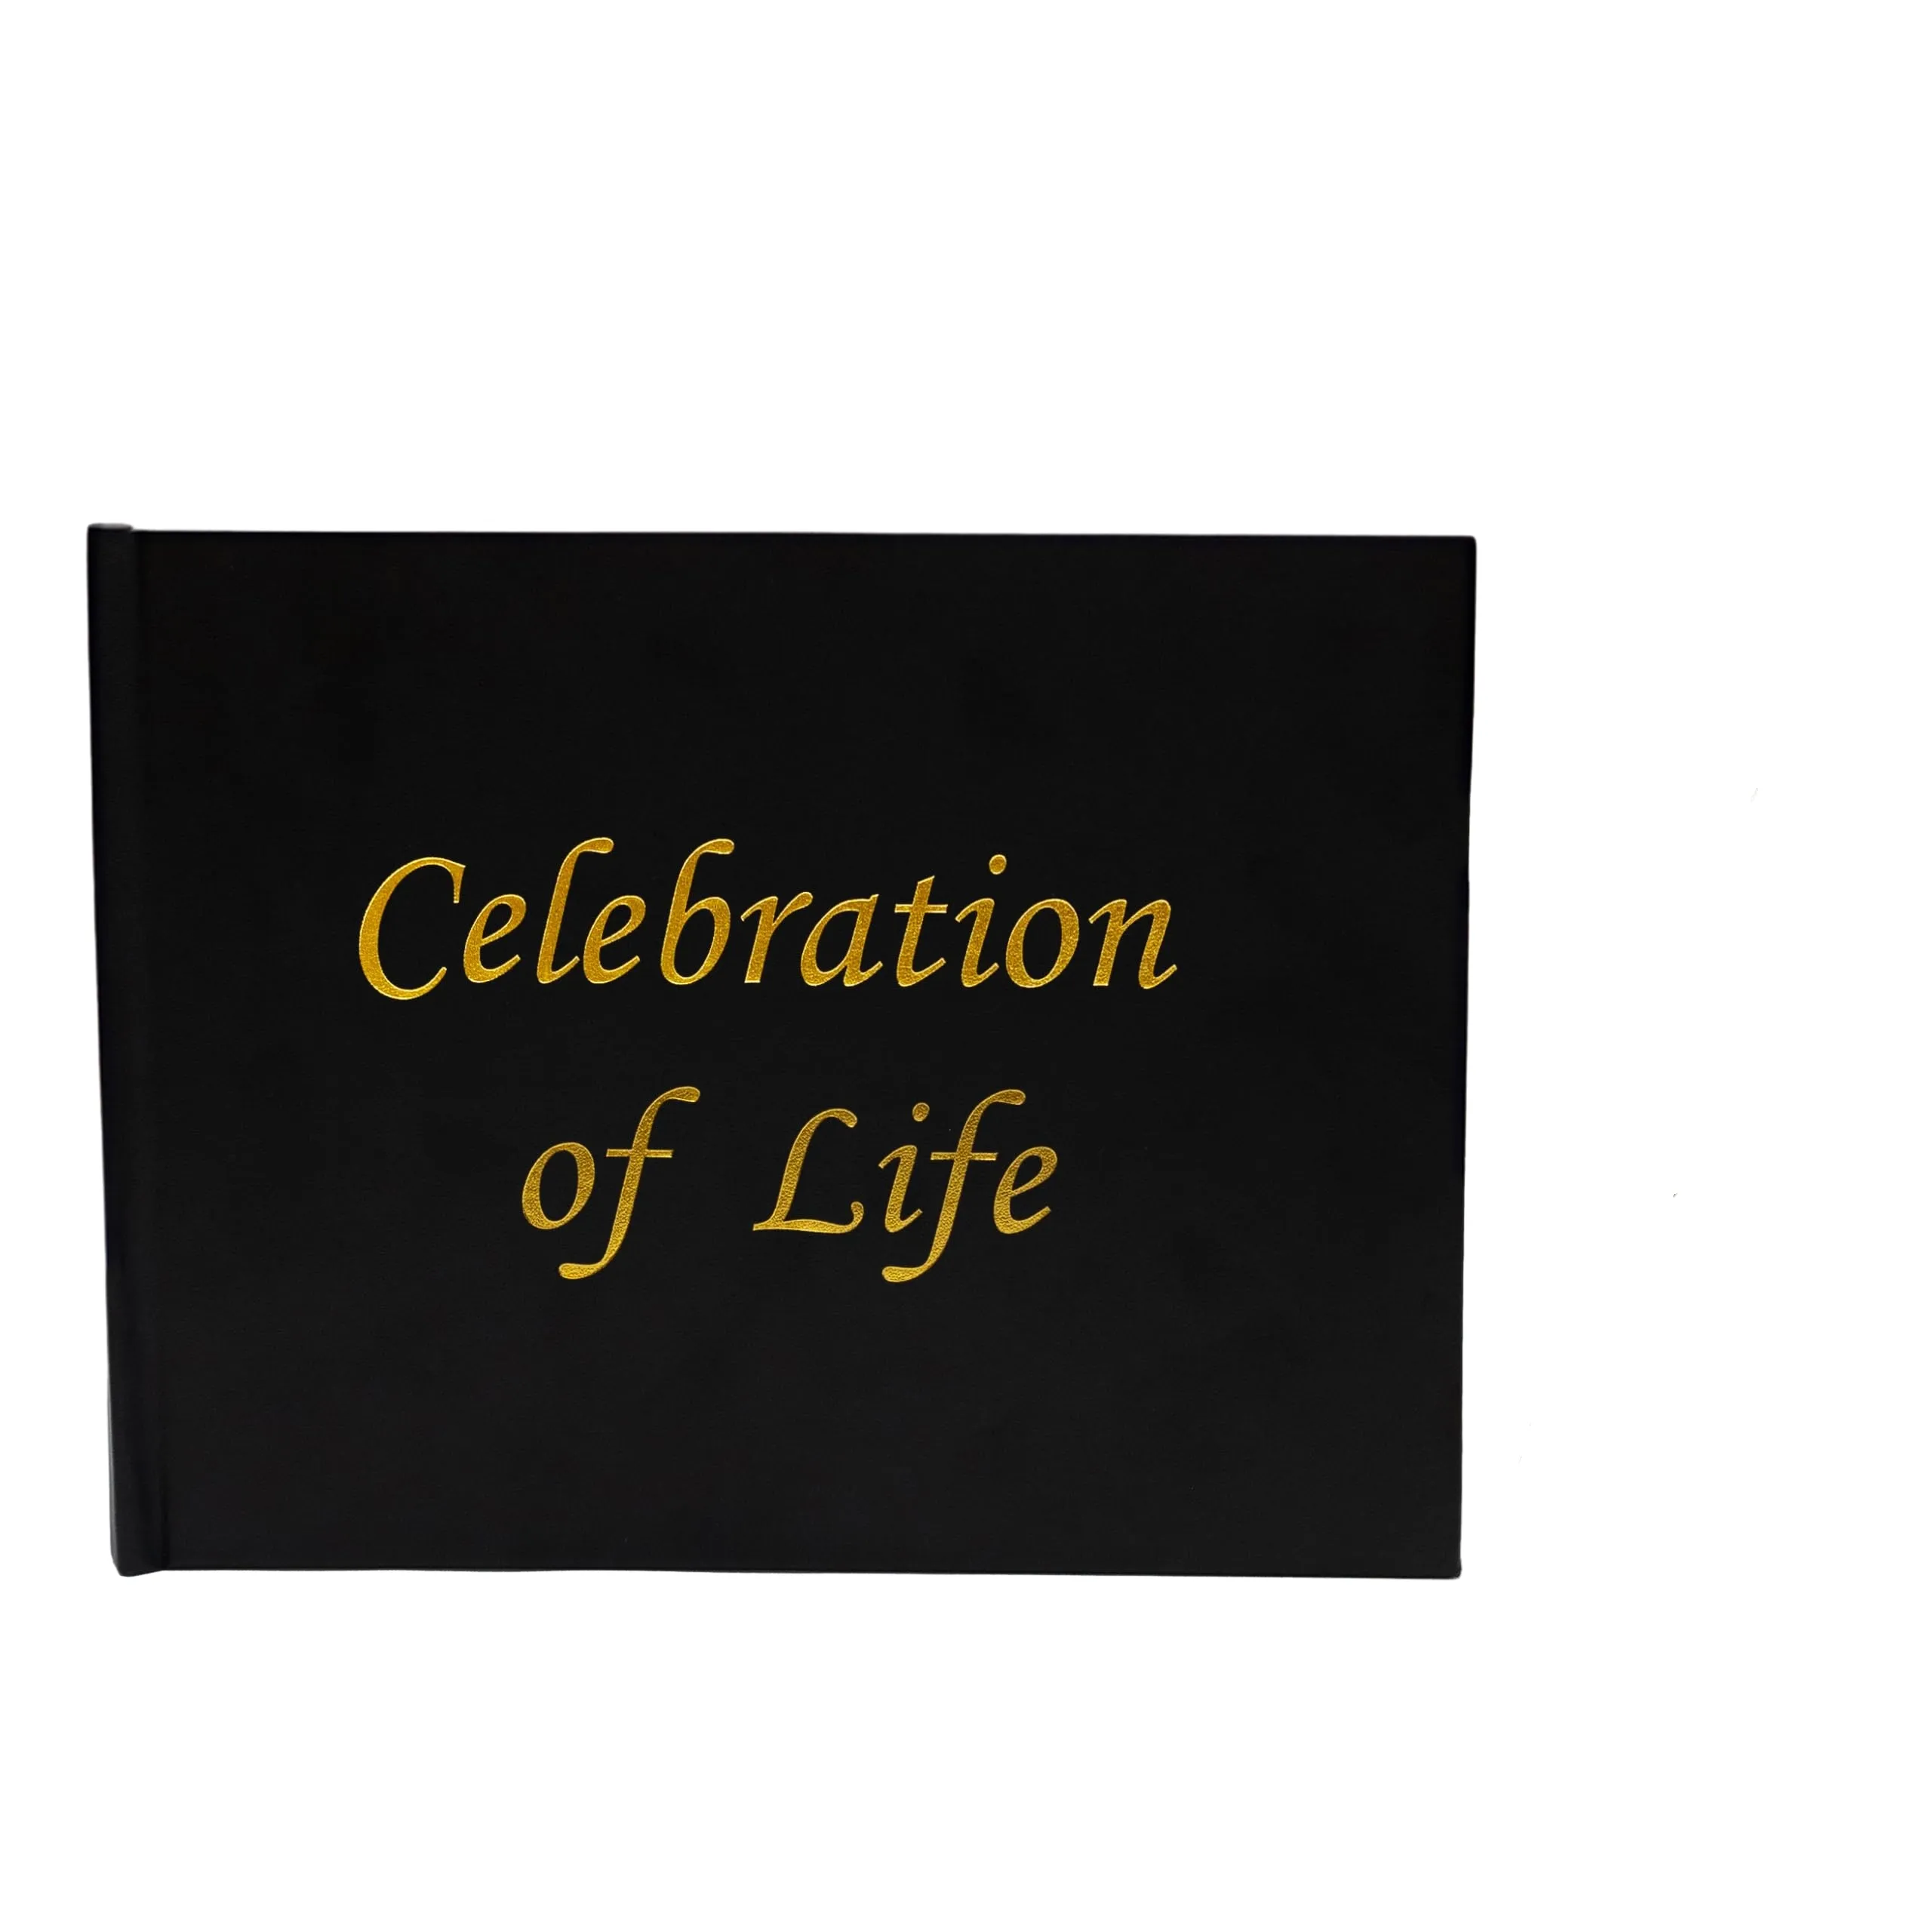 كتاب هدايا للزوار مخصص مطبوع بشكل رقيق من الجلد ومزين بنقوش ذهبية للاحتفال بالحياة